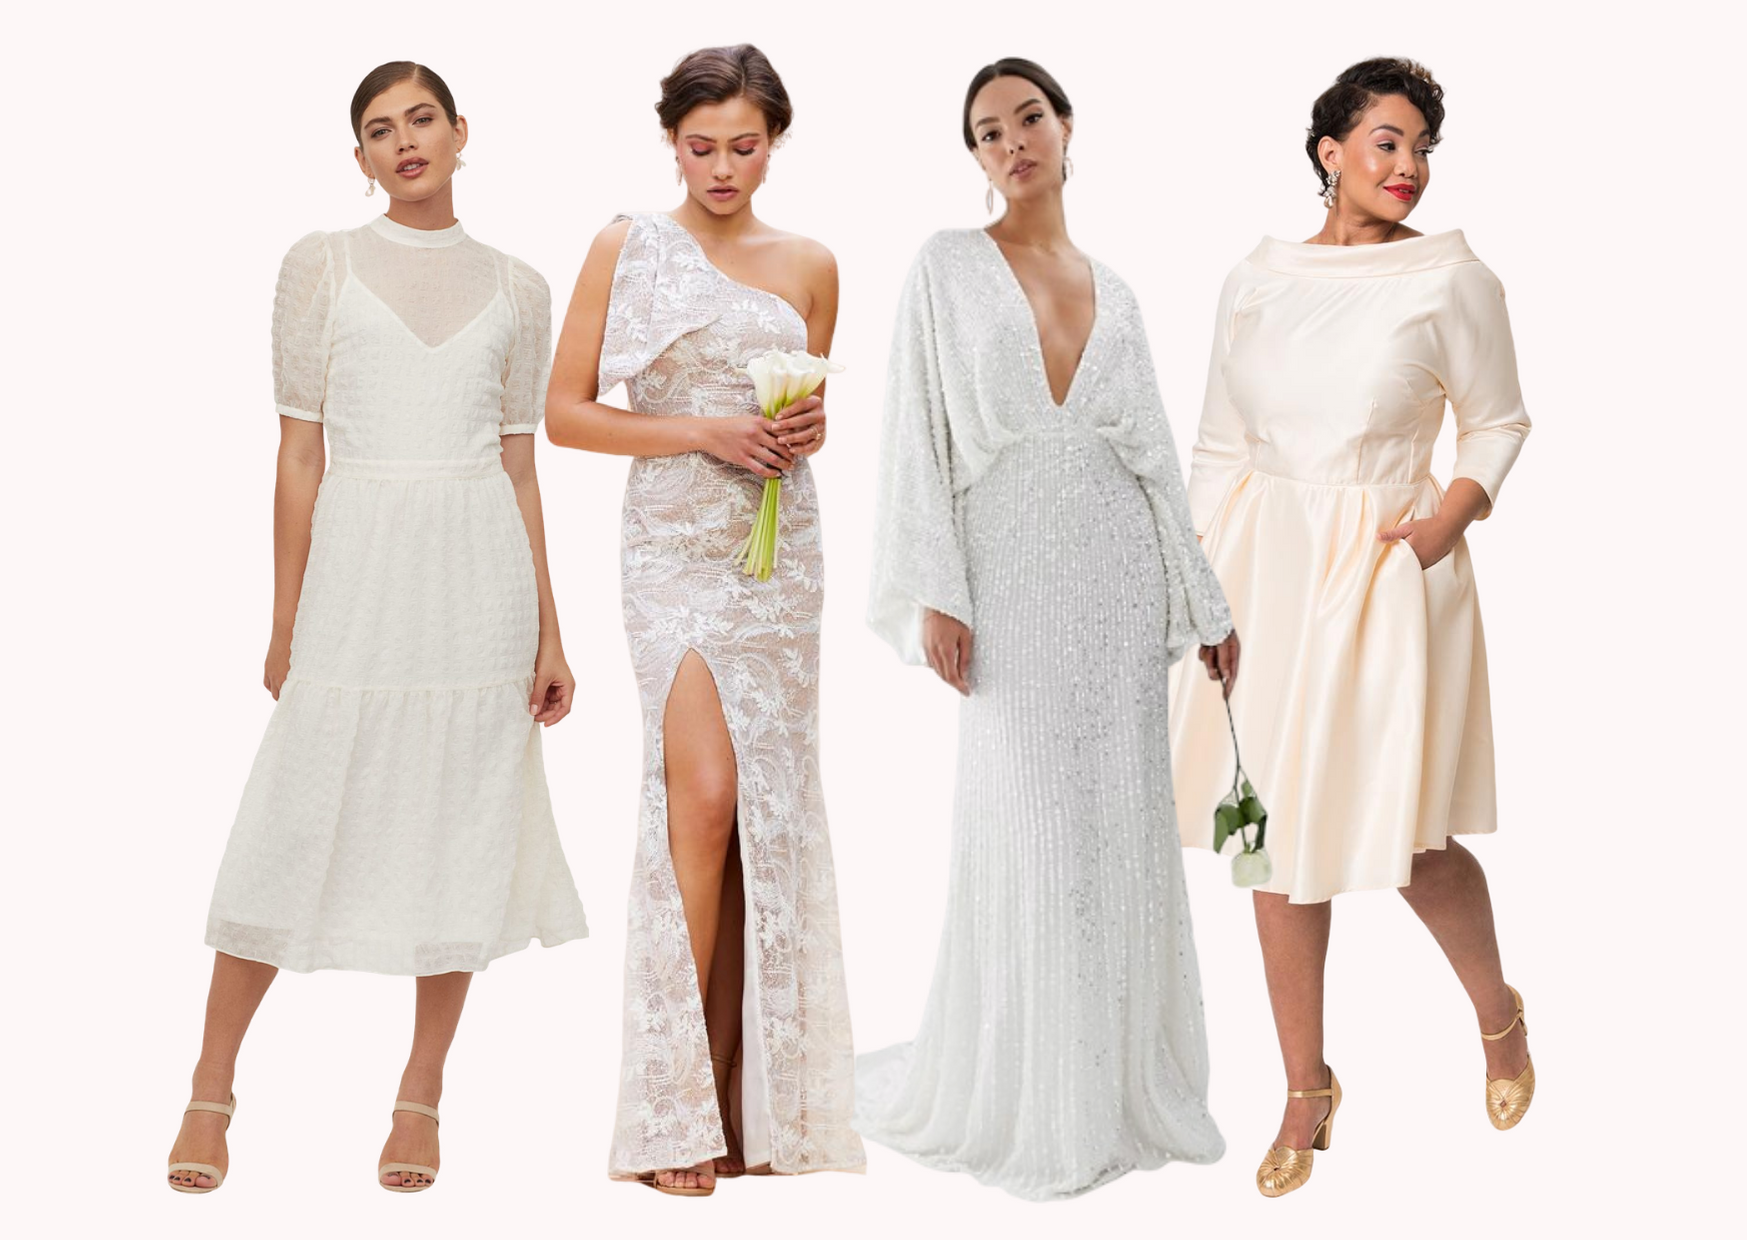 For women modeling off the rack wedding dresses